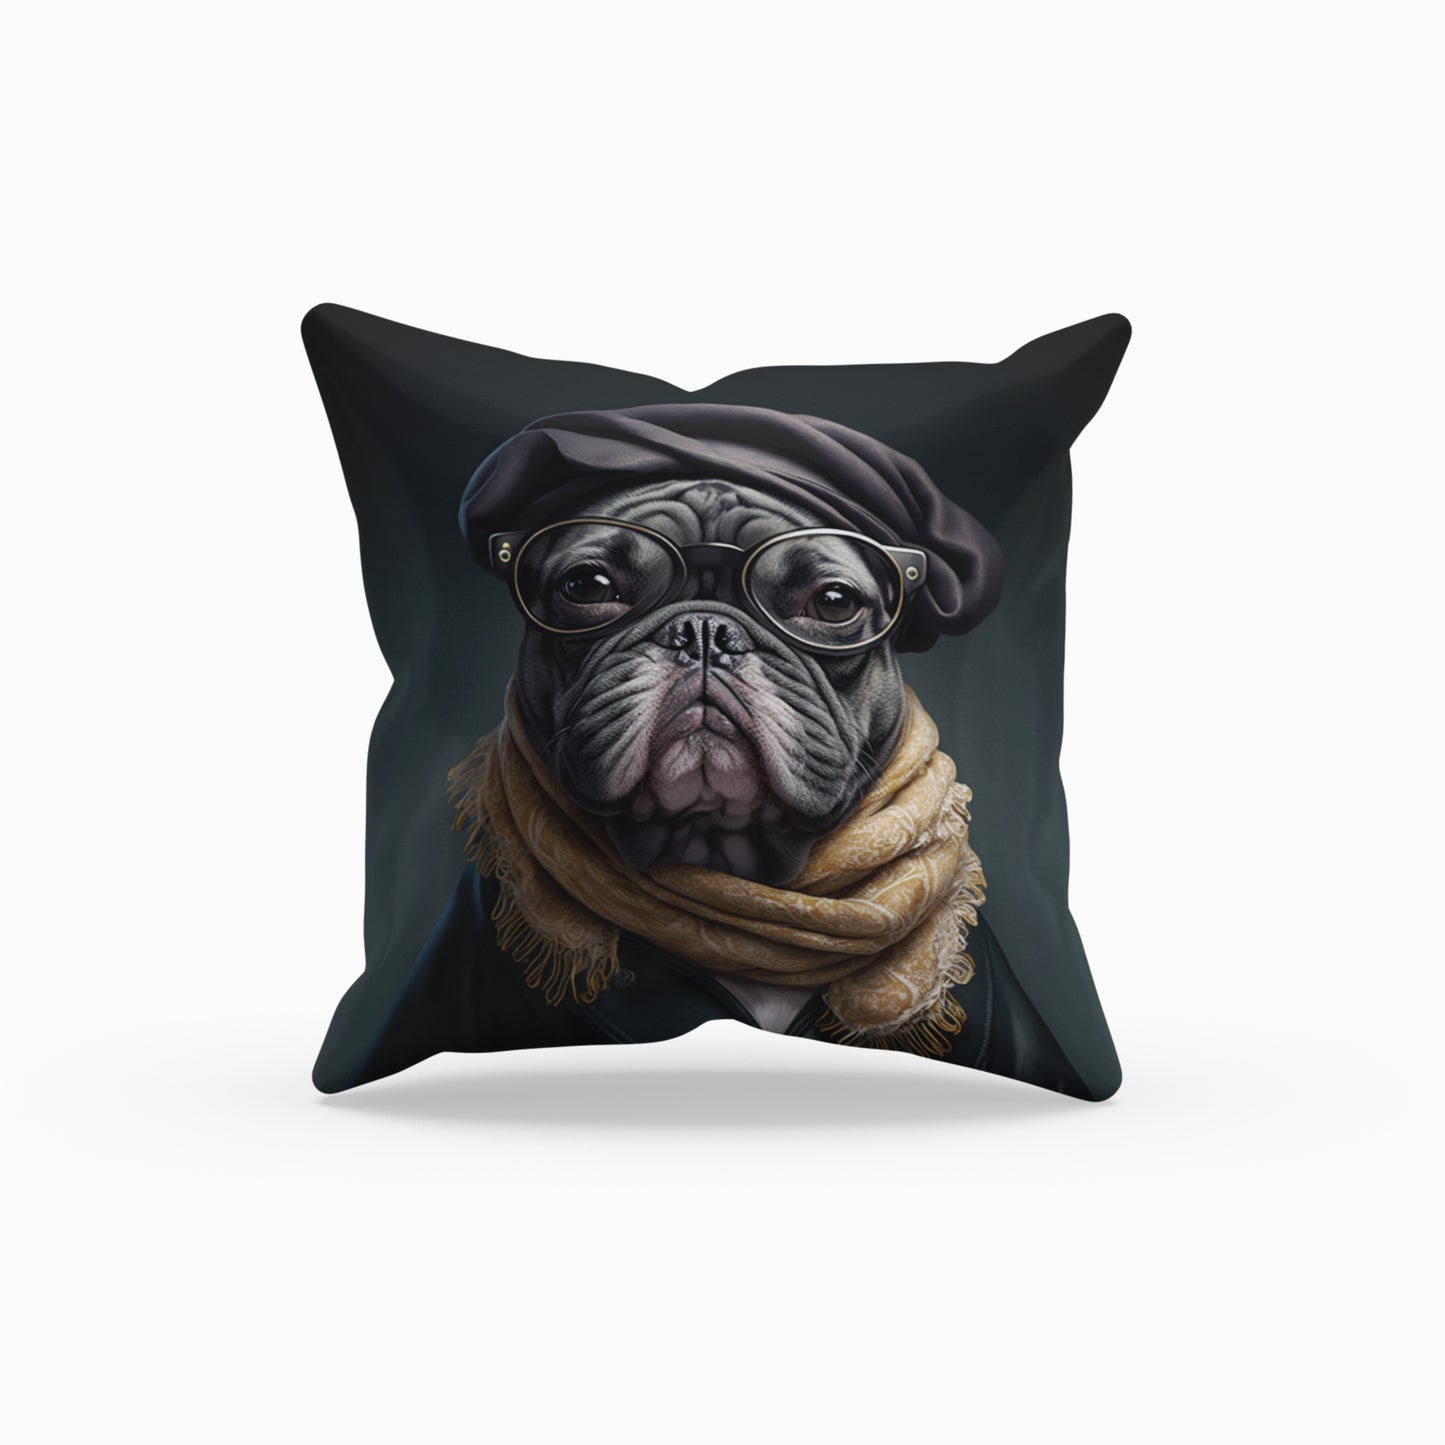 Playful Bulldog-themed Decor Pillow